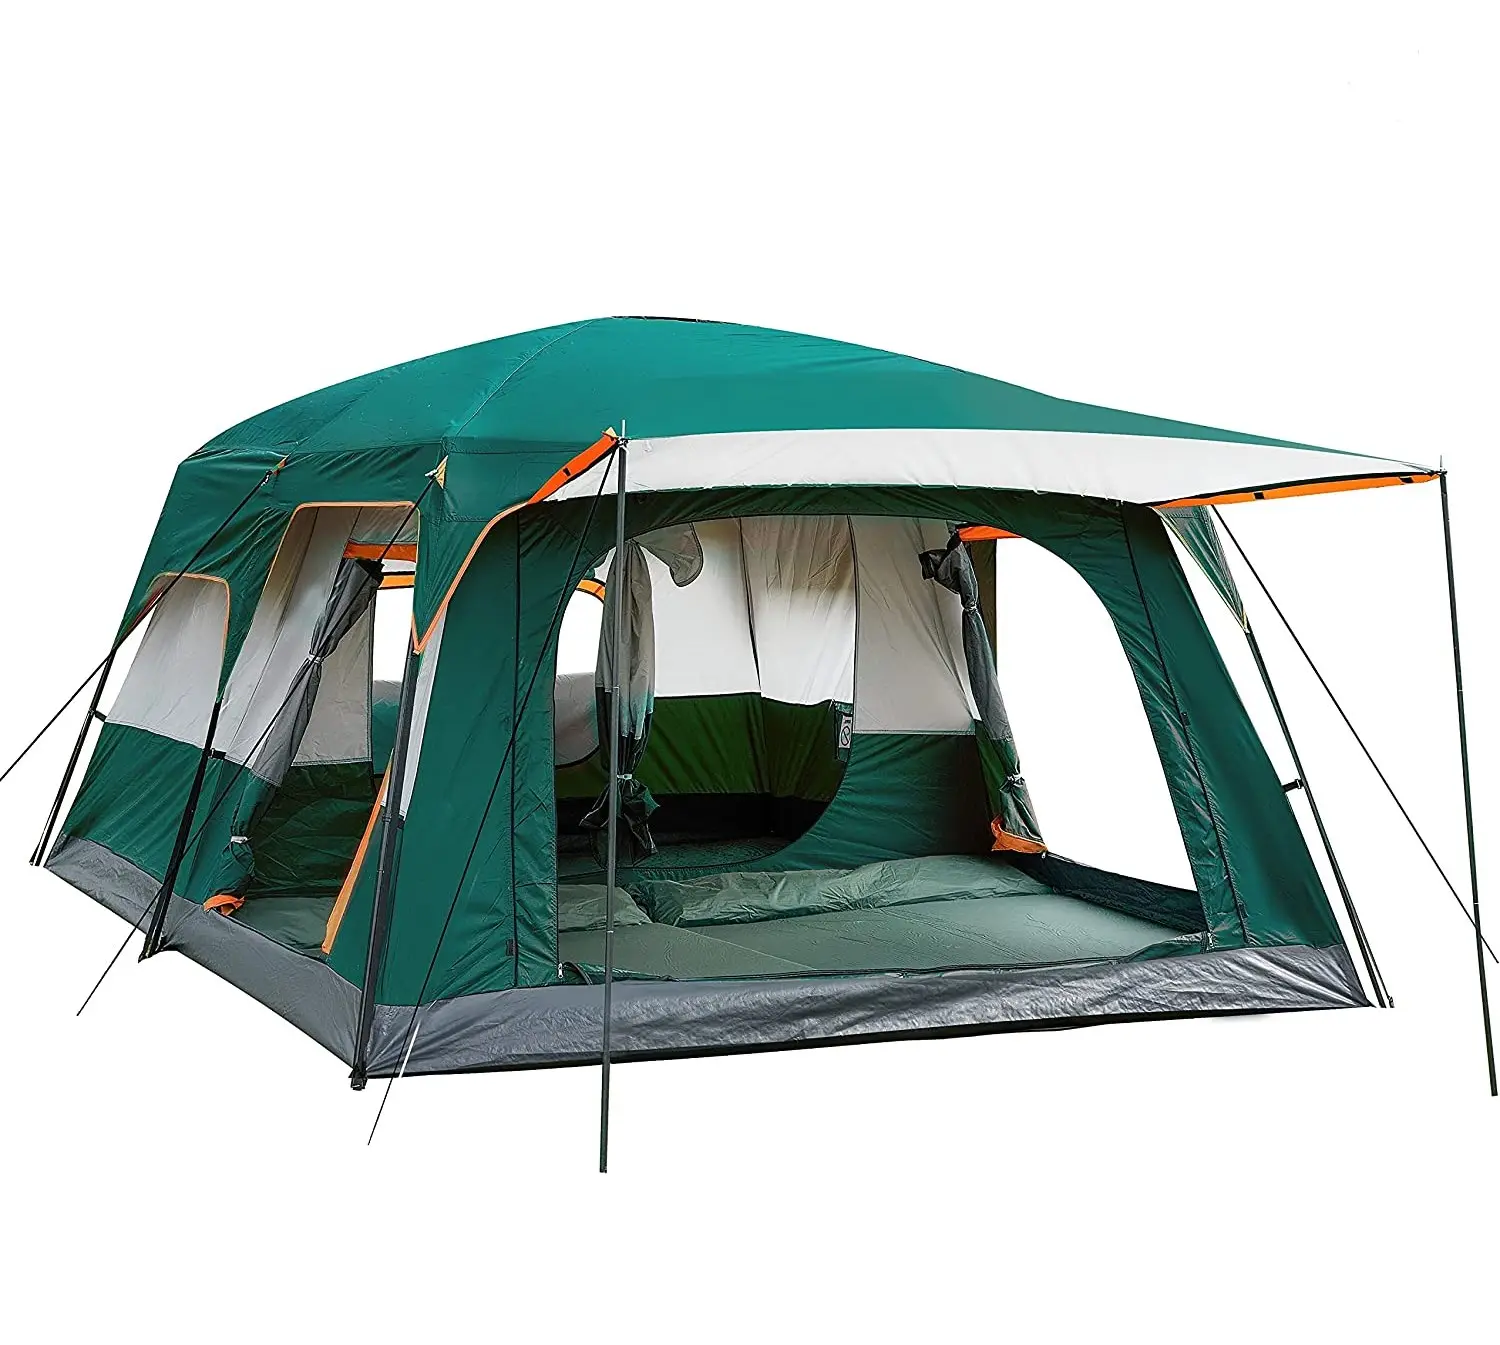 Tenda Extra Large per 12 persone, tende per cabine familiari, impermeabile, doppio strato, grande tenda per esterno, Picnic, campeggio, famiglia